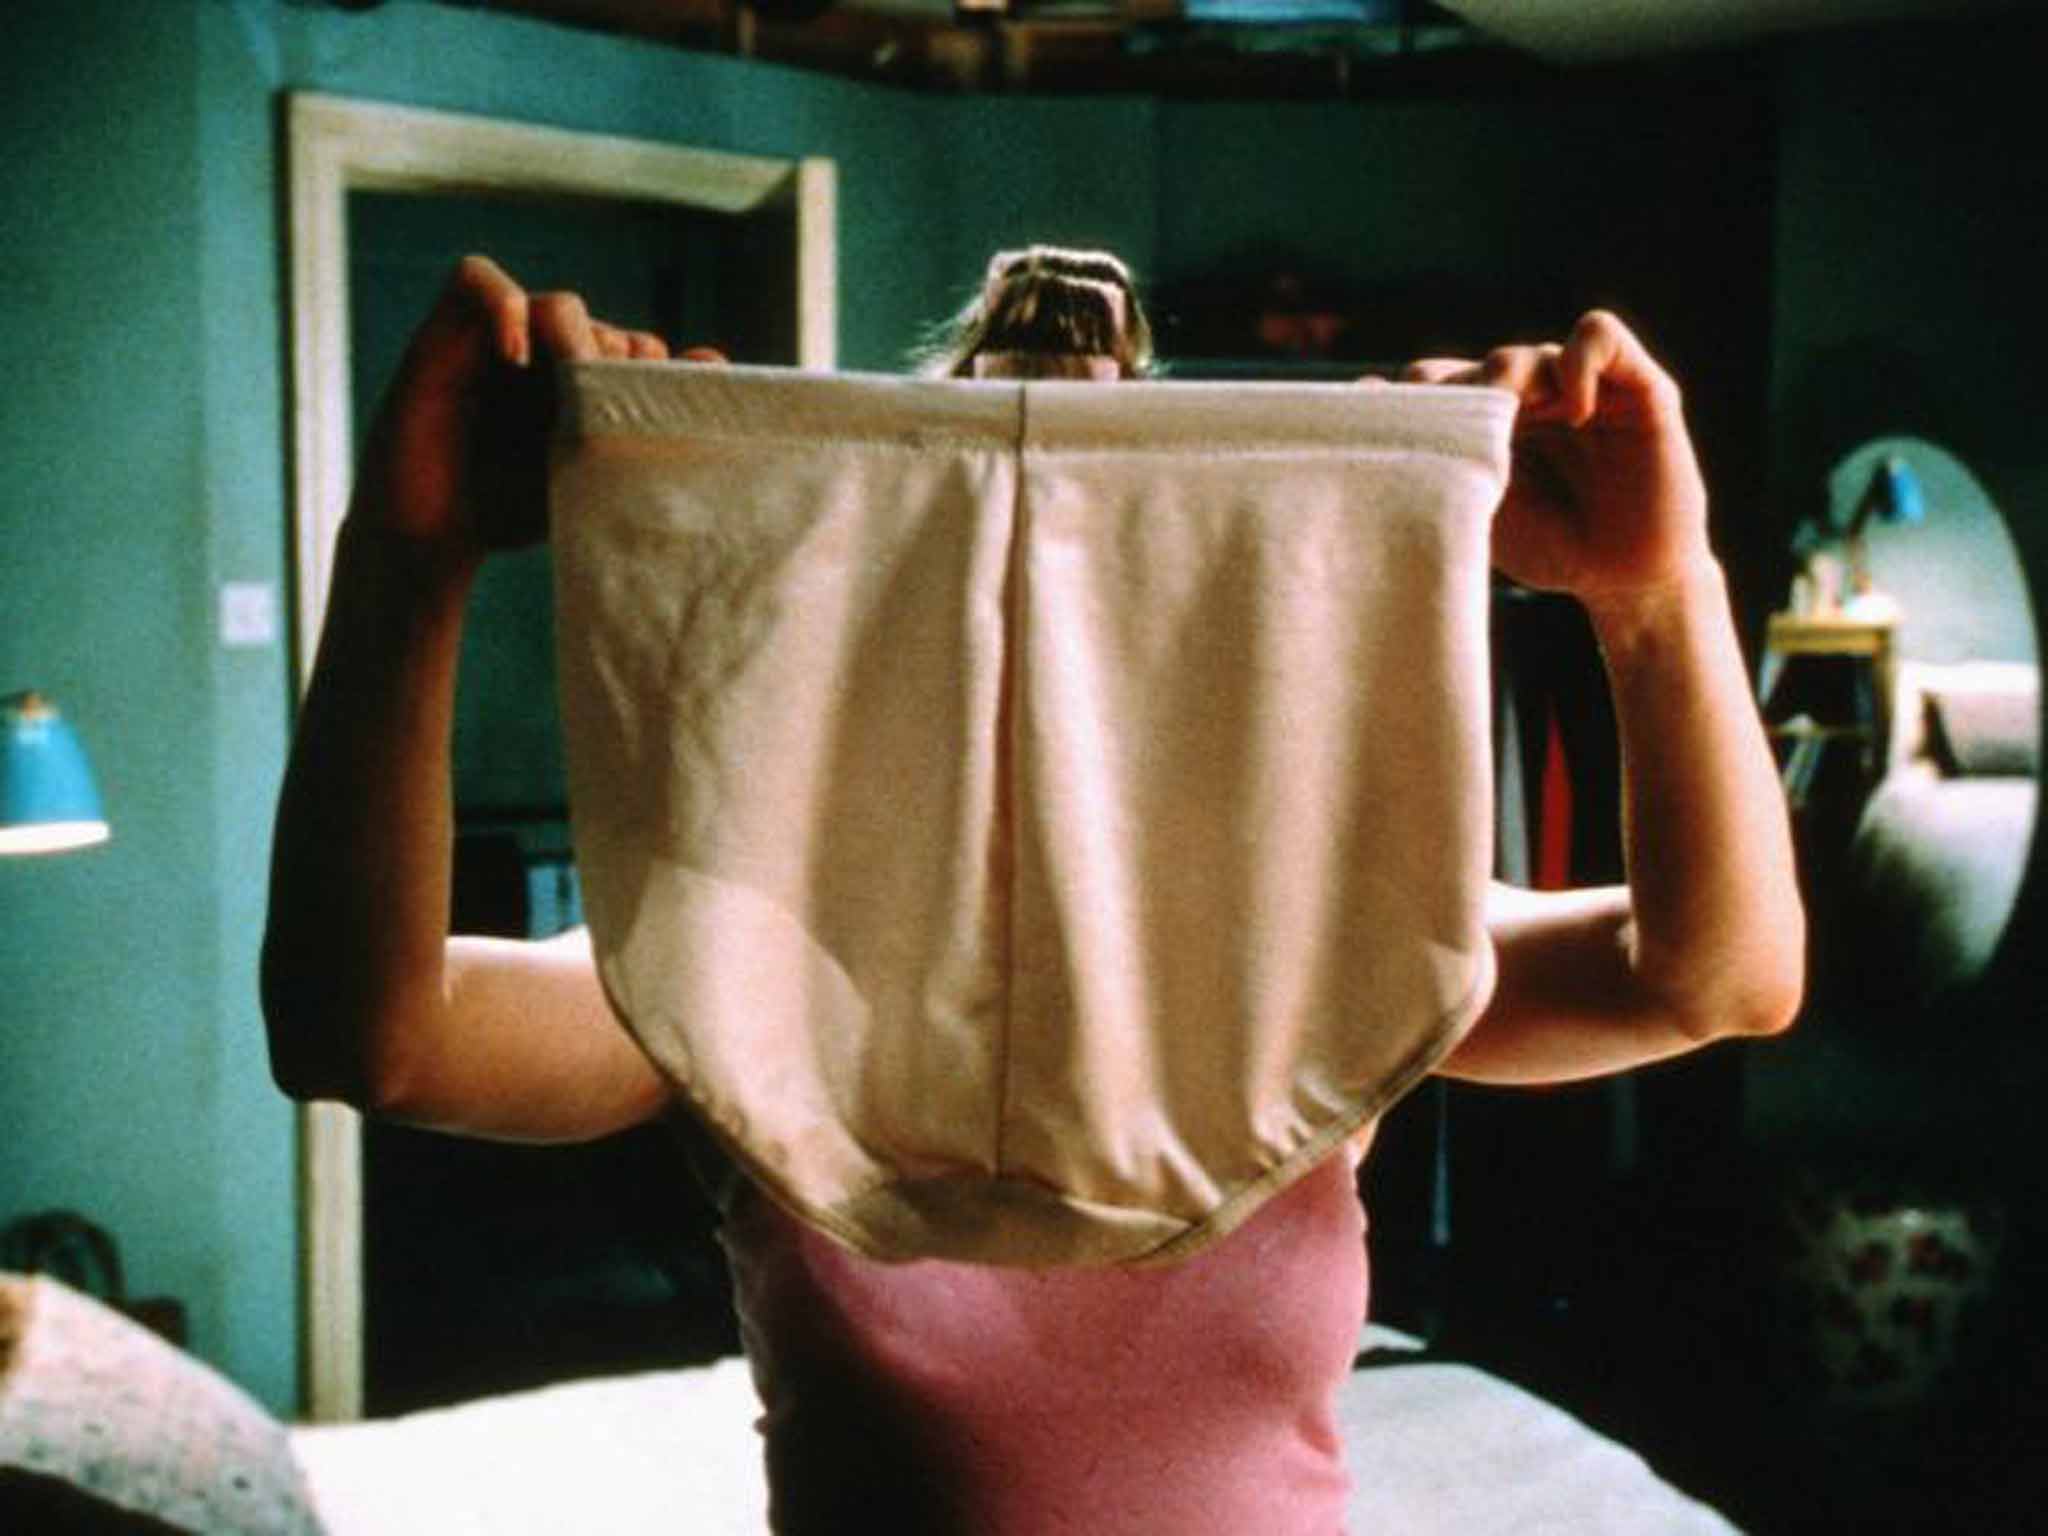 Bridget Jones' underwear